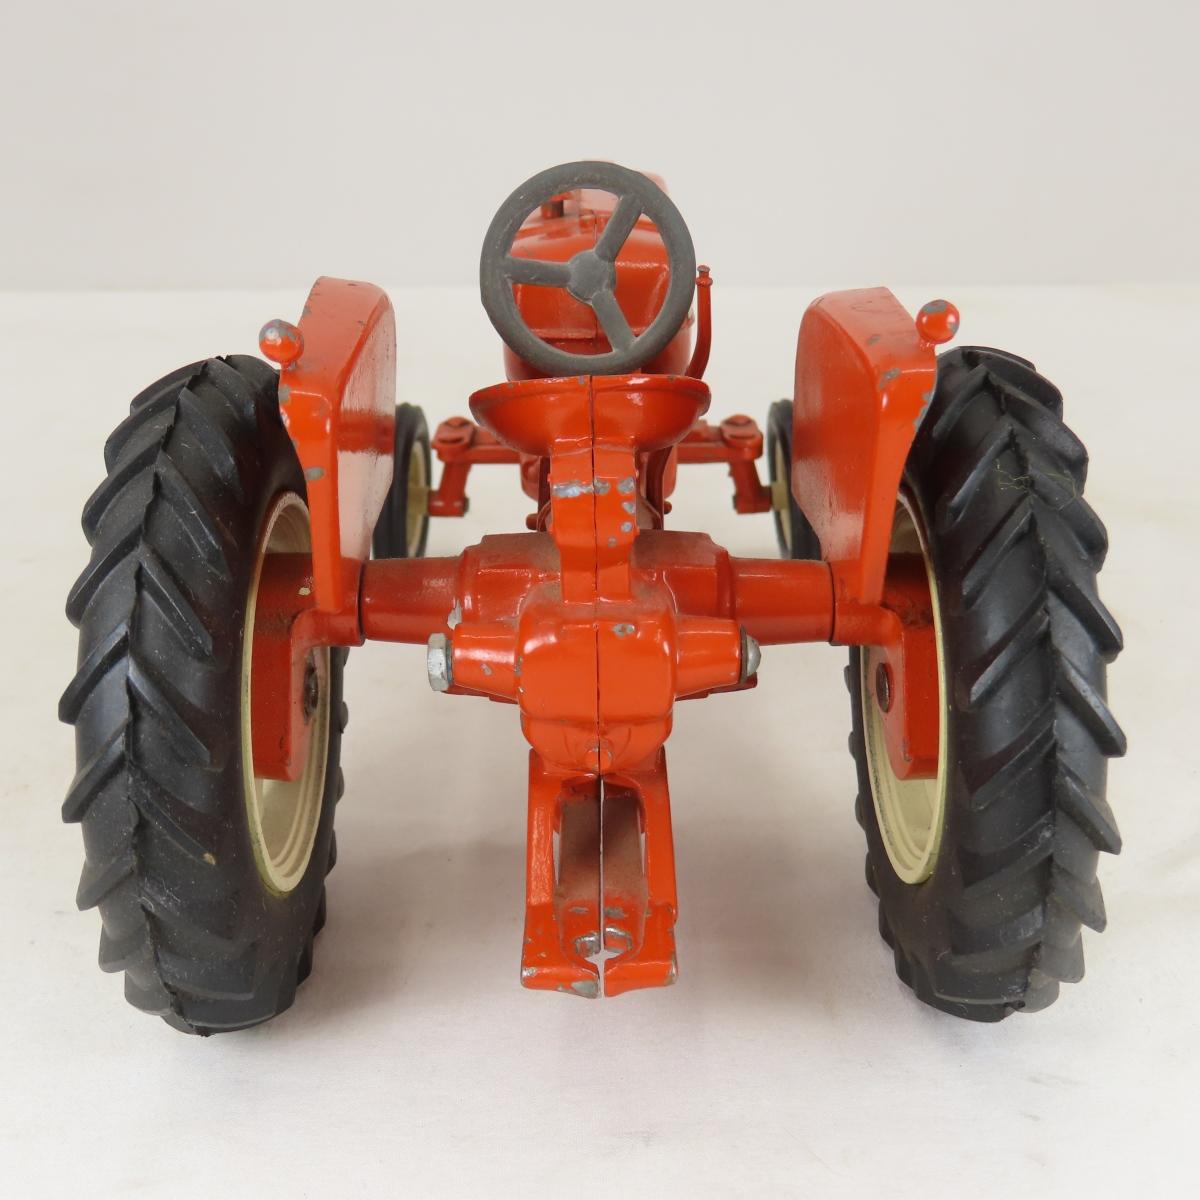 ERTL D-15 Tractor & Lawn & Garden Tractor Set 1/16